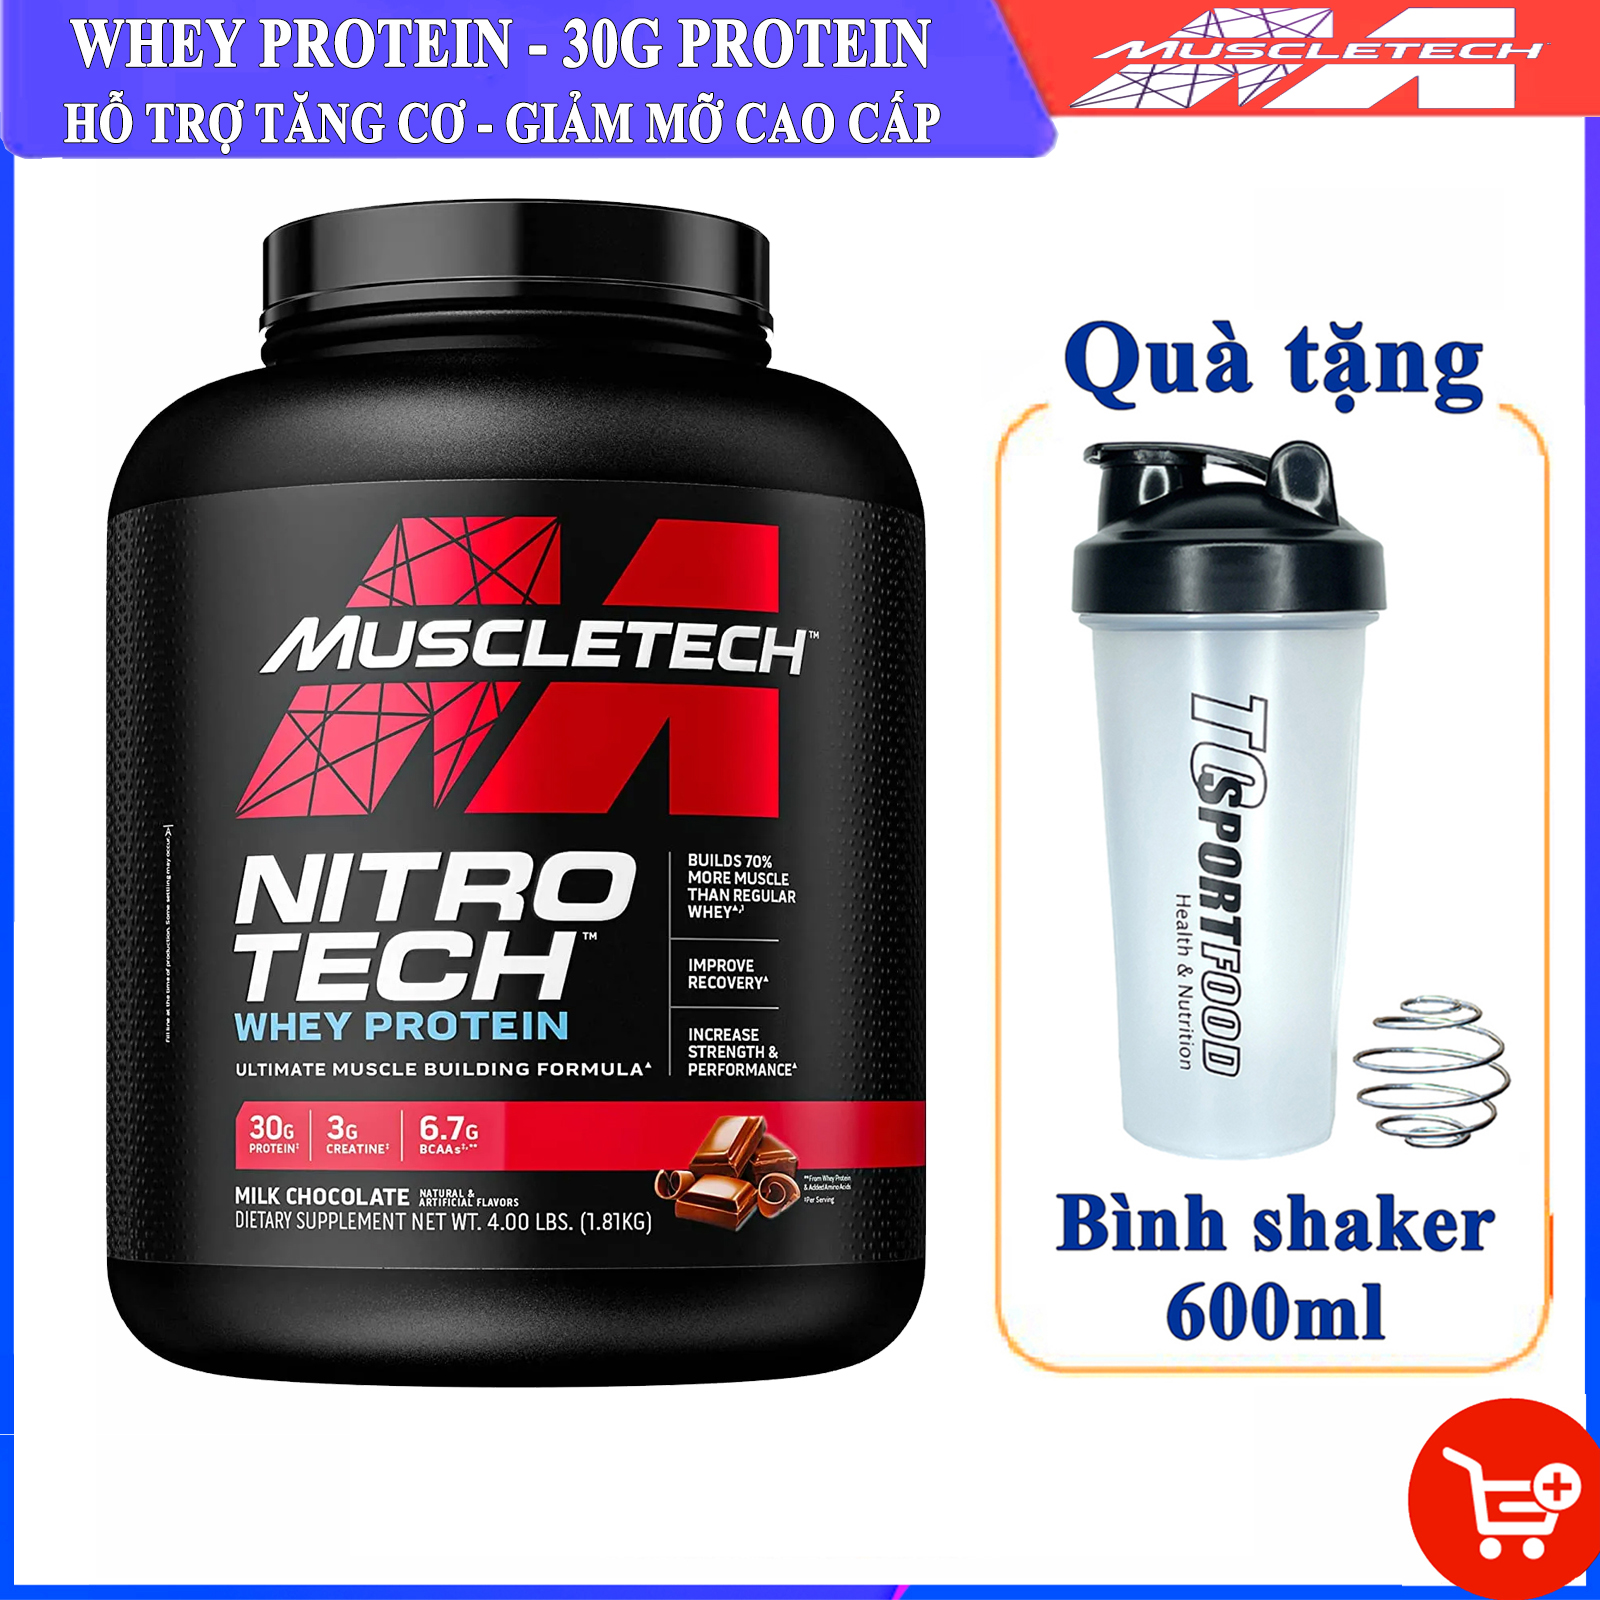 KÈM BÌNH SHAKER Sữa tăng cơ cao cấp Whey Protein Nitro Tech của MuscleTech thumbnail